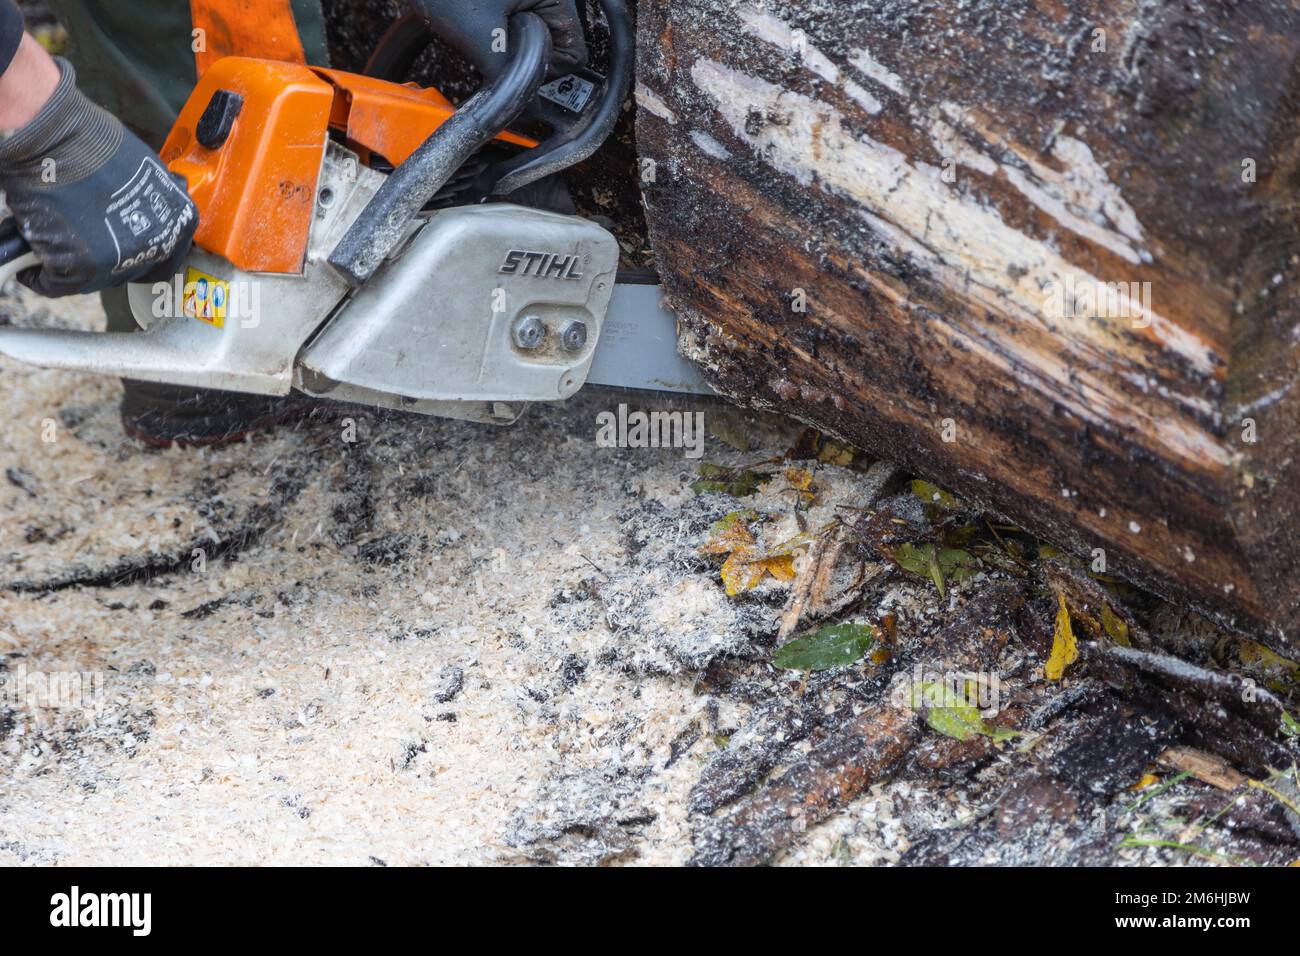 Neuwied, Germania - 22 ottobre 2022: H una motosega Stihl tagliava un tronco d'albero che giace sul terreno. Stihl è un produttore tedesco di catene Foto Stock